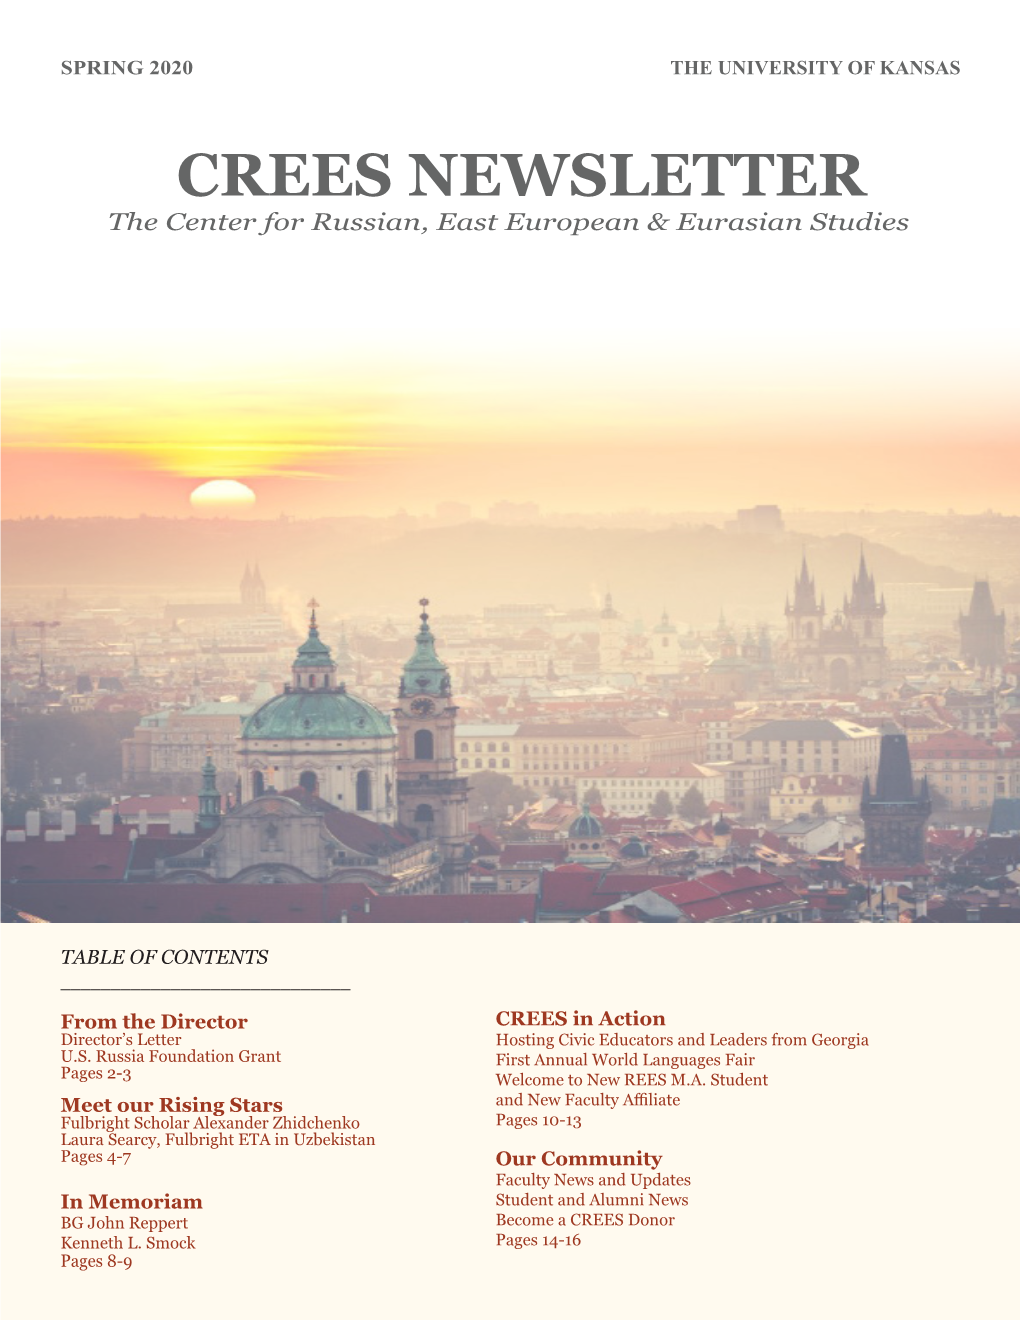 CREES NEWSLETTER the Center for Russian, East European & Eurasian Studies